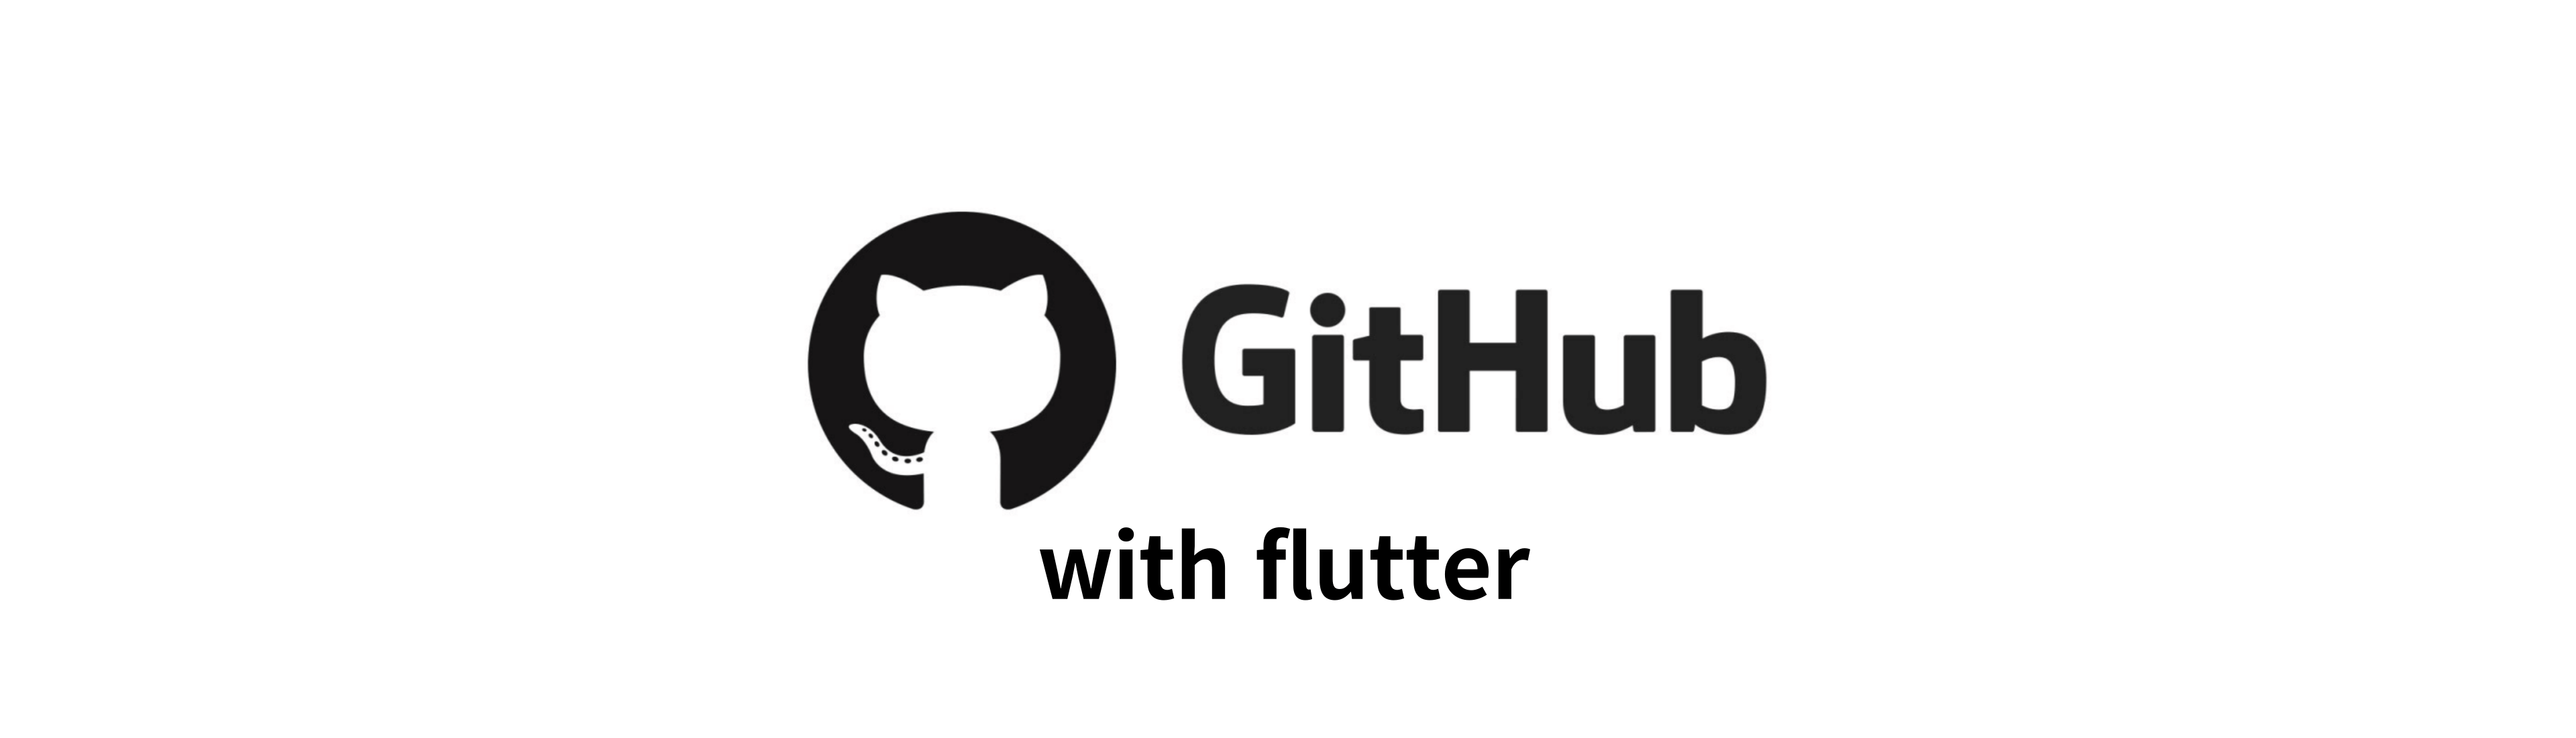 github-logo-image